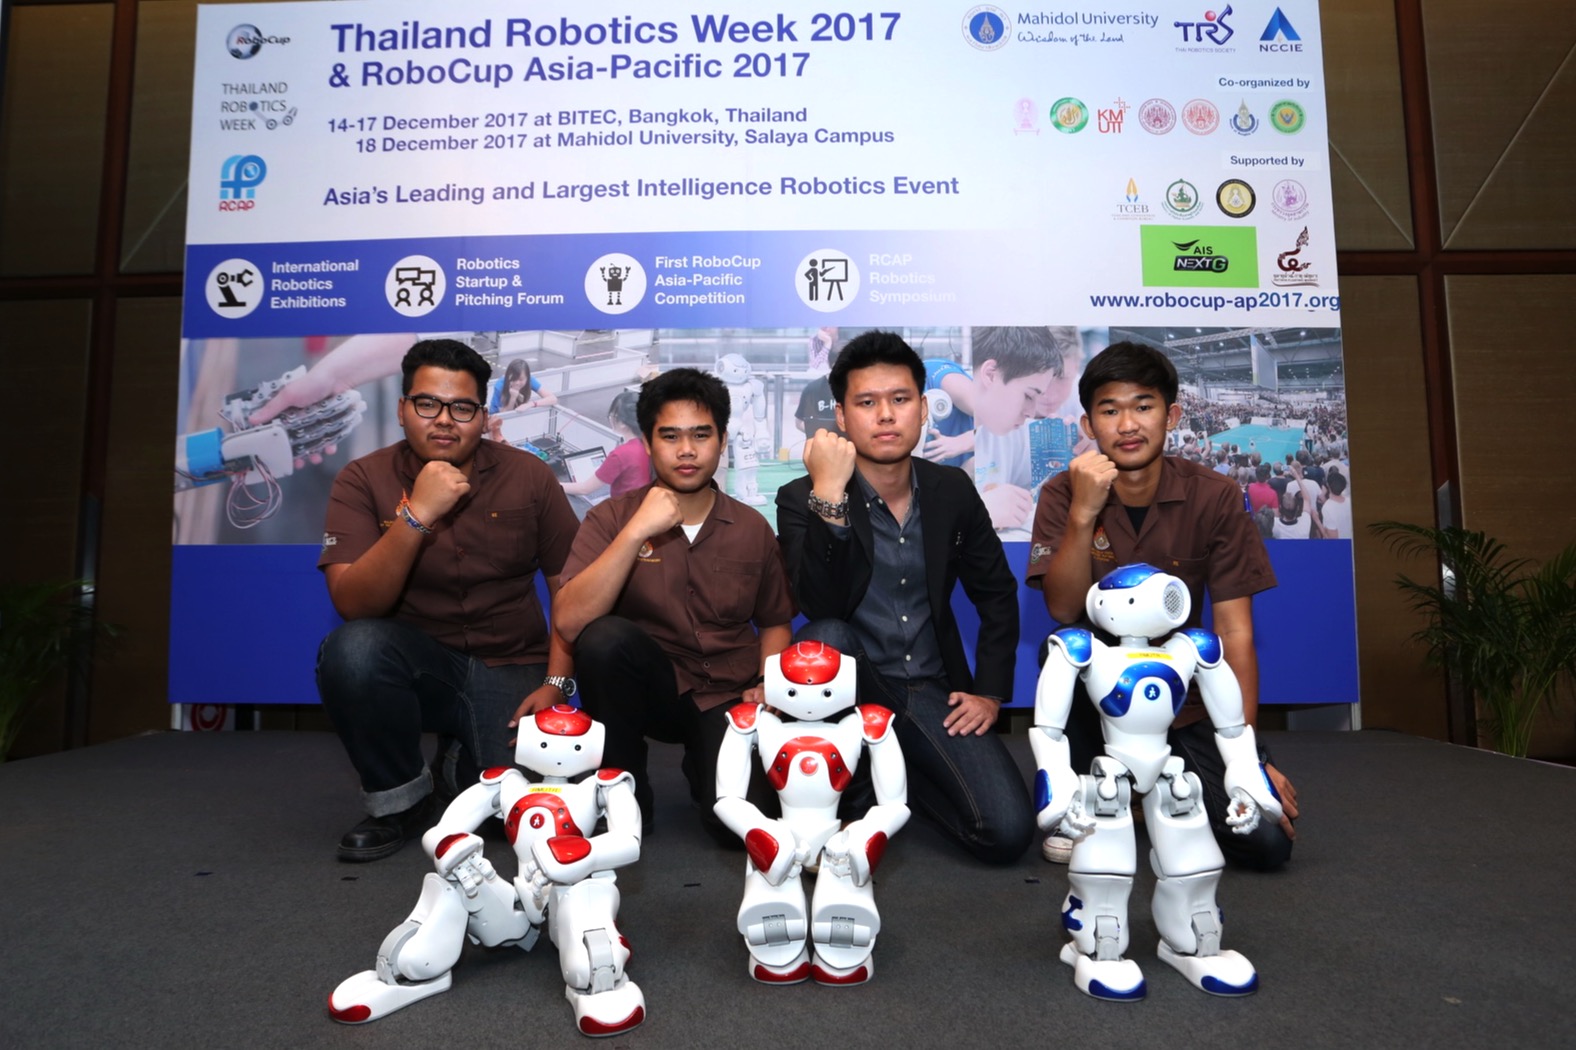 RMUTR เผยโฉมทีมหุ่นยนต์เตะฟุตบอล ชิงแชมป์ RoboCup Asia-Pacific 2017